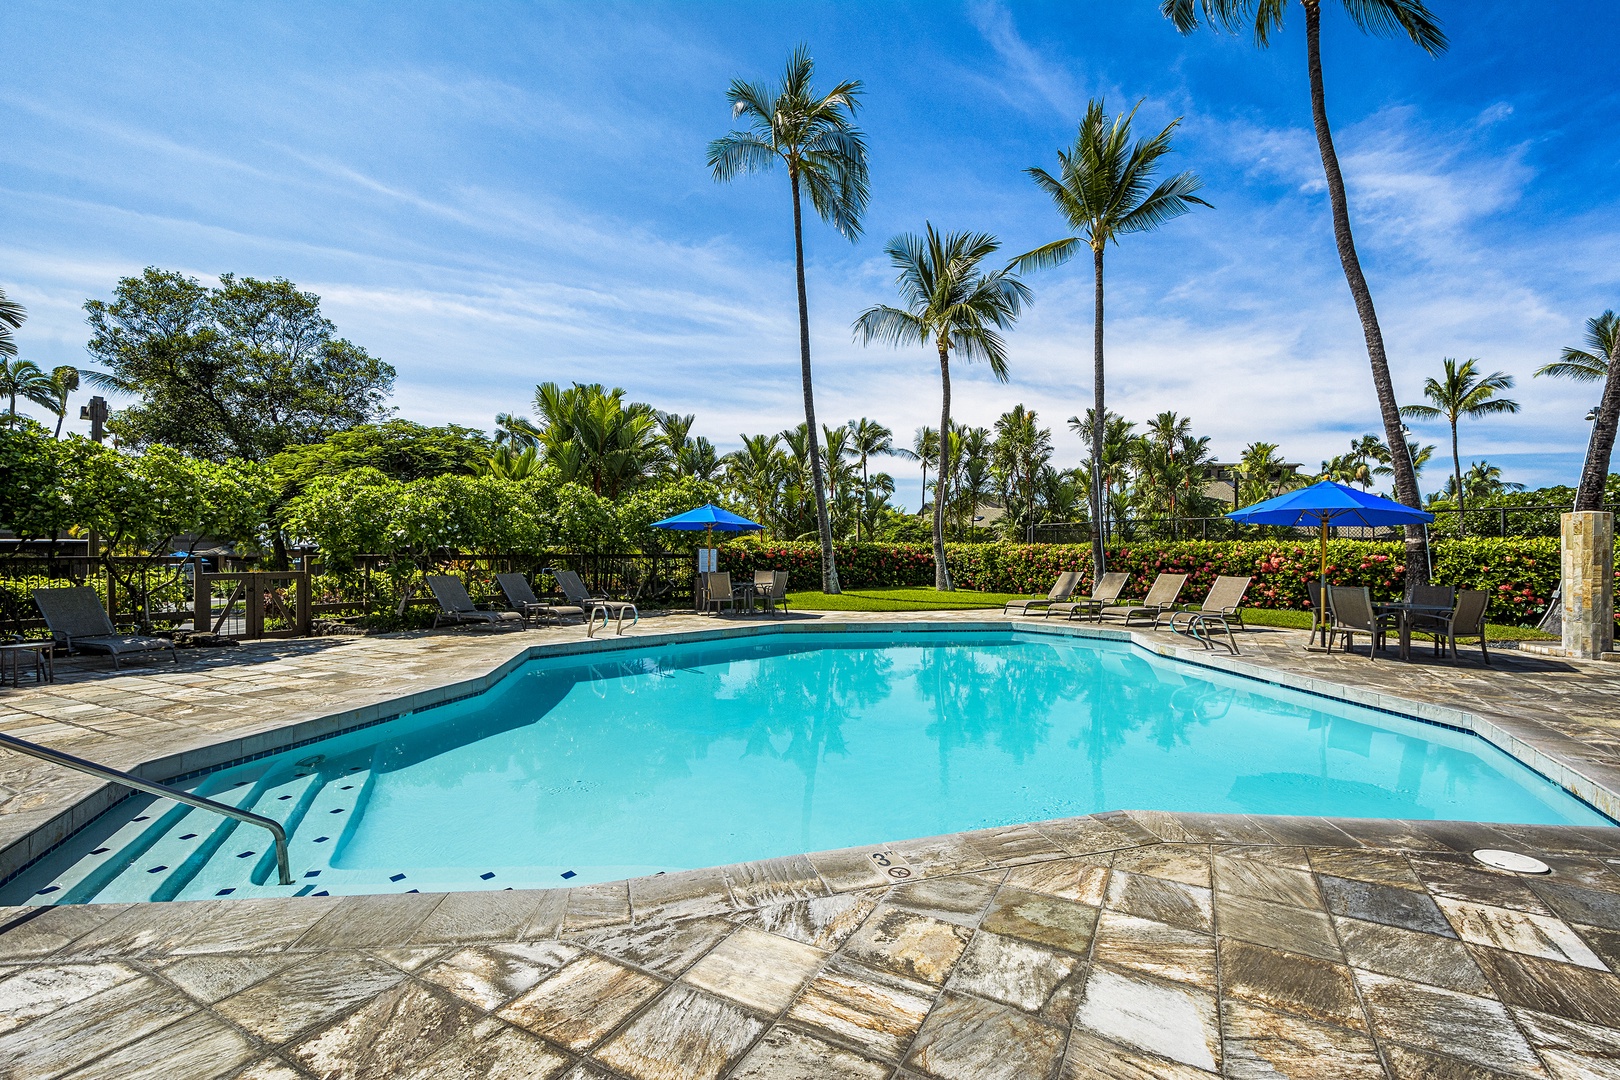 Kailua Kona Vacation Rentals, Kanaloa at Kona 1606 - Perfect pool for relaxing in the Kona sun!